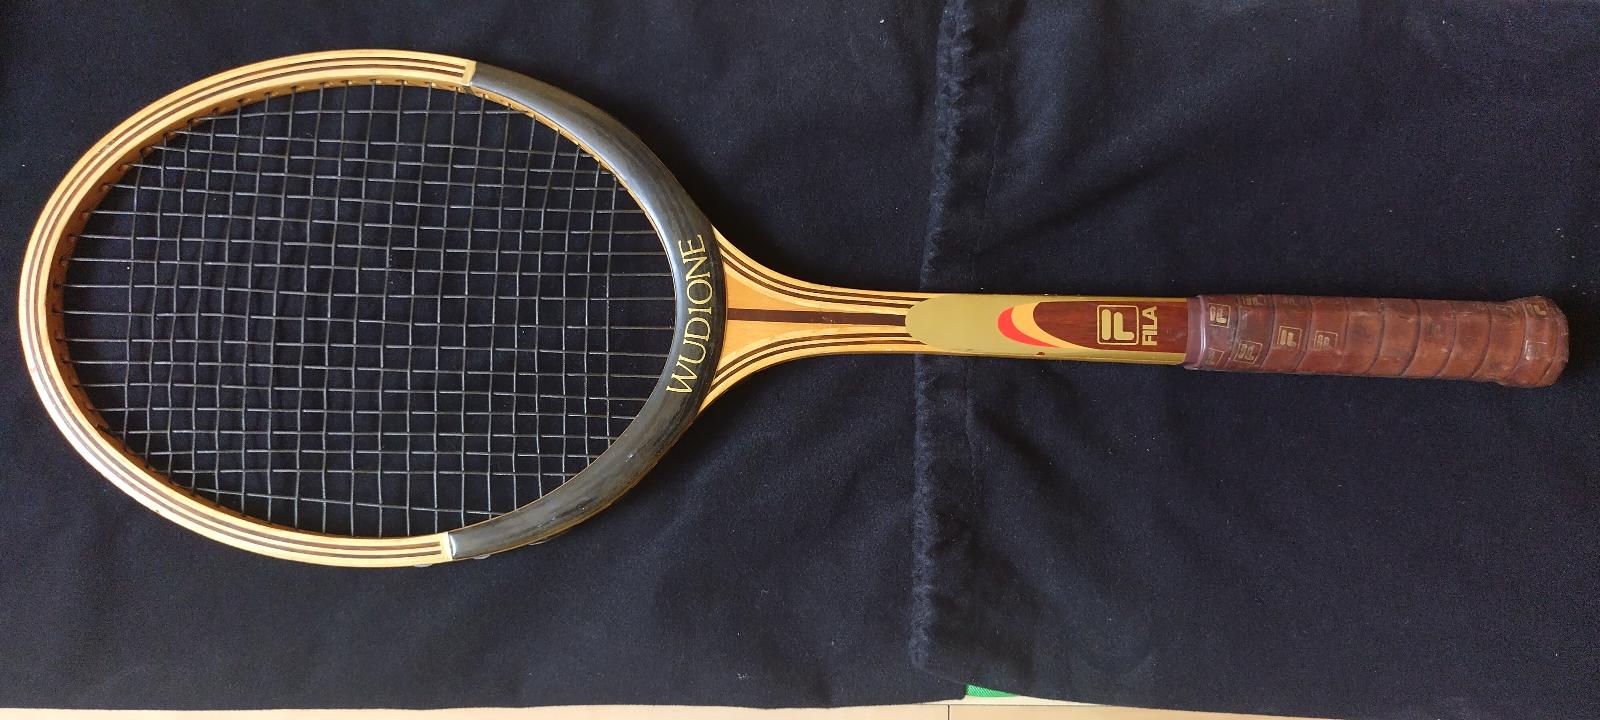 Predám drevenú tenisovú raketu Fila 1 s obalom - Vybavenie na tenis, squash, bedminton